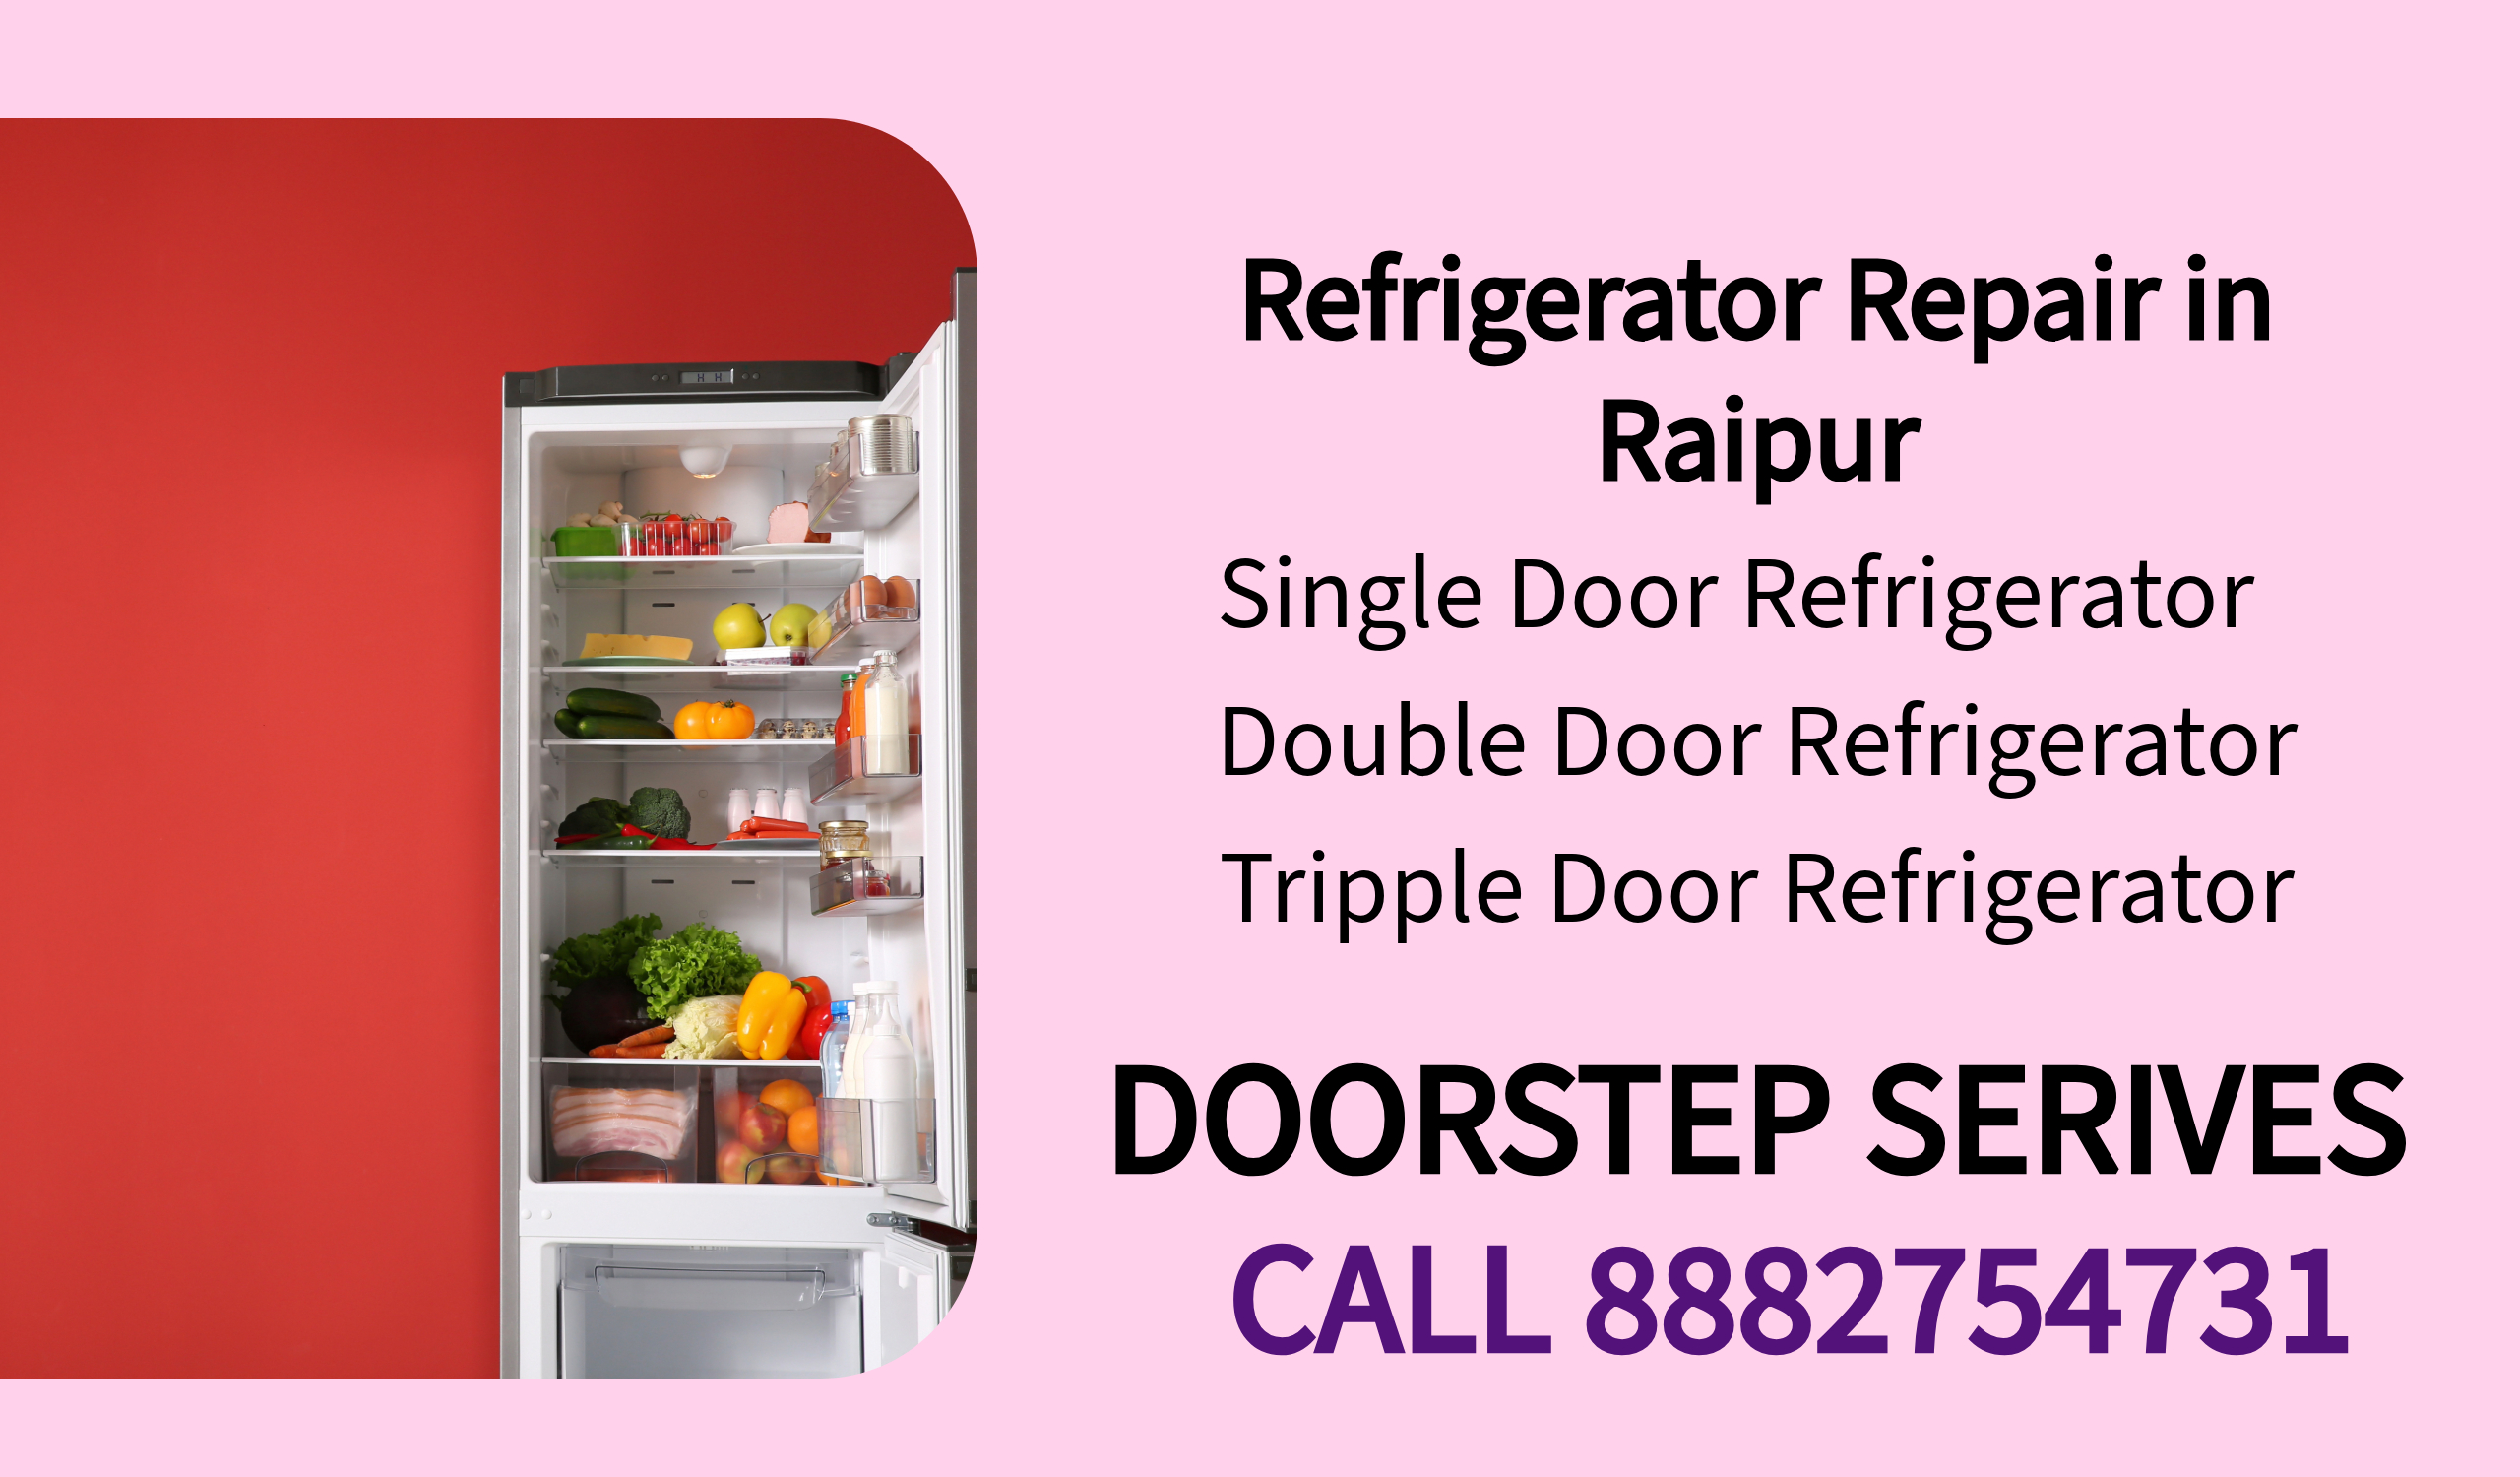 refrigerator-repair-service-in-raipur